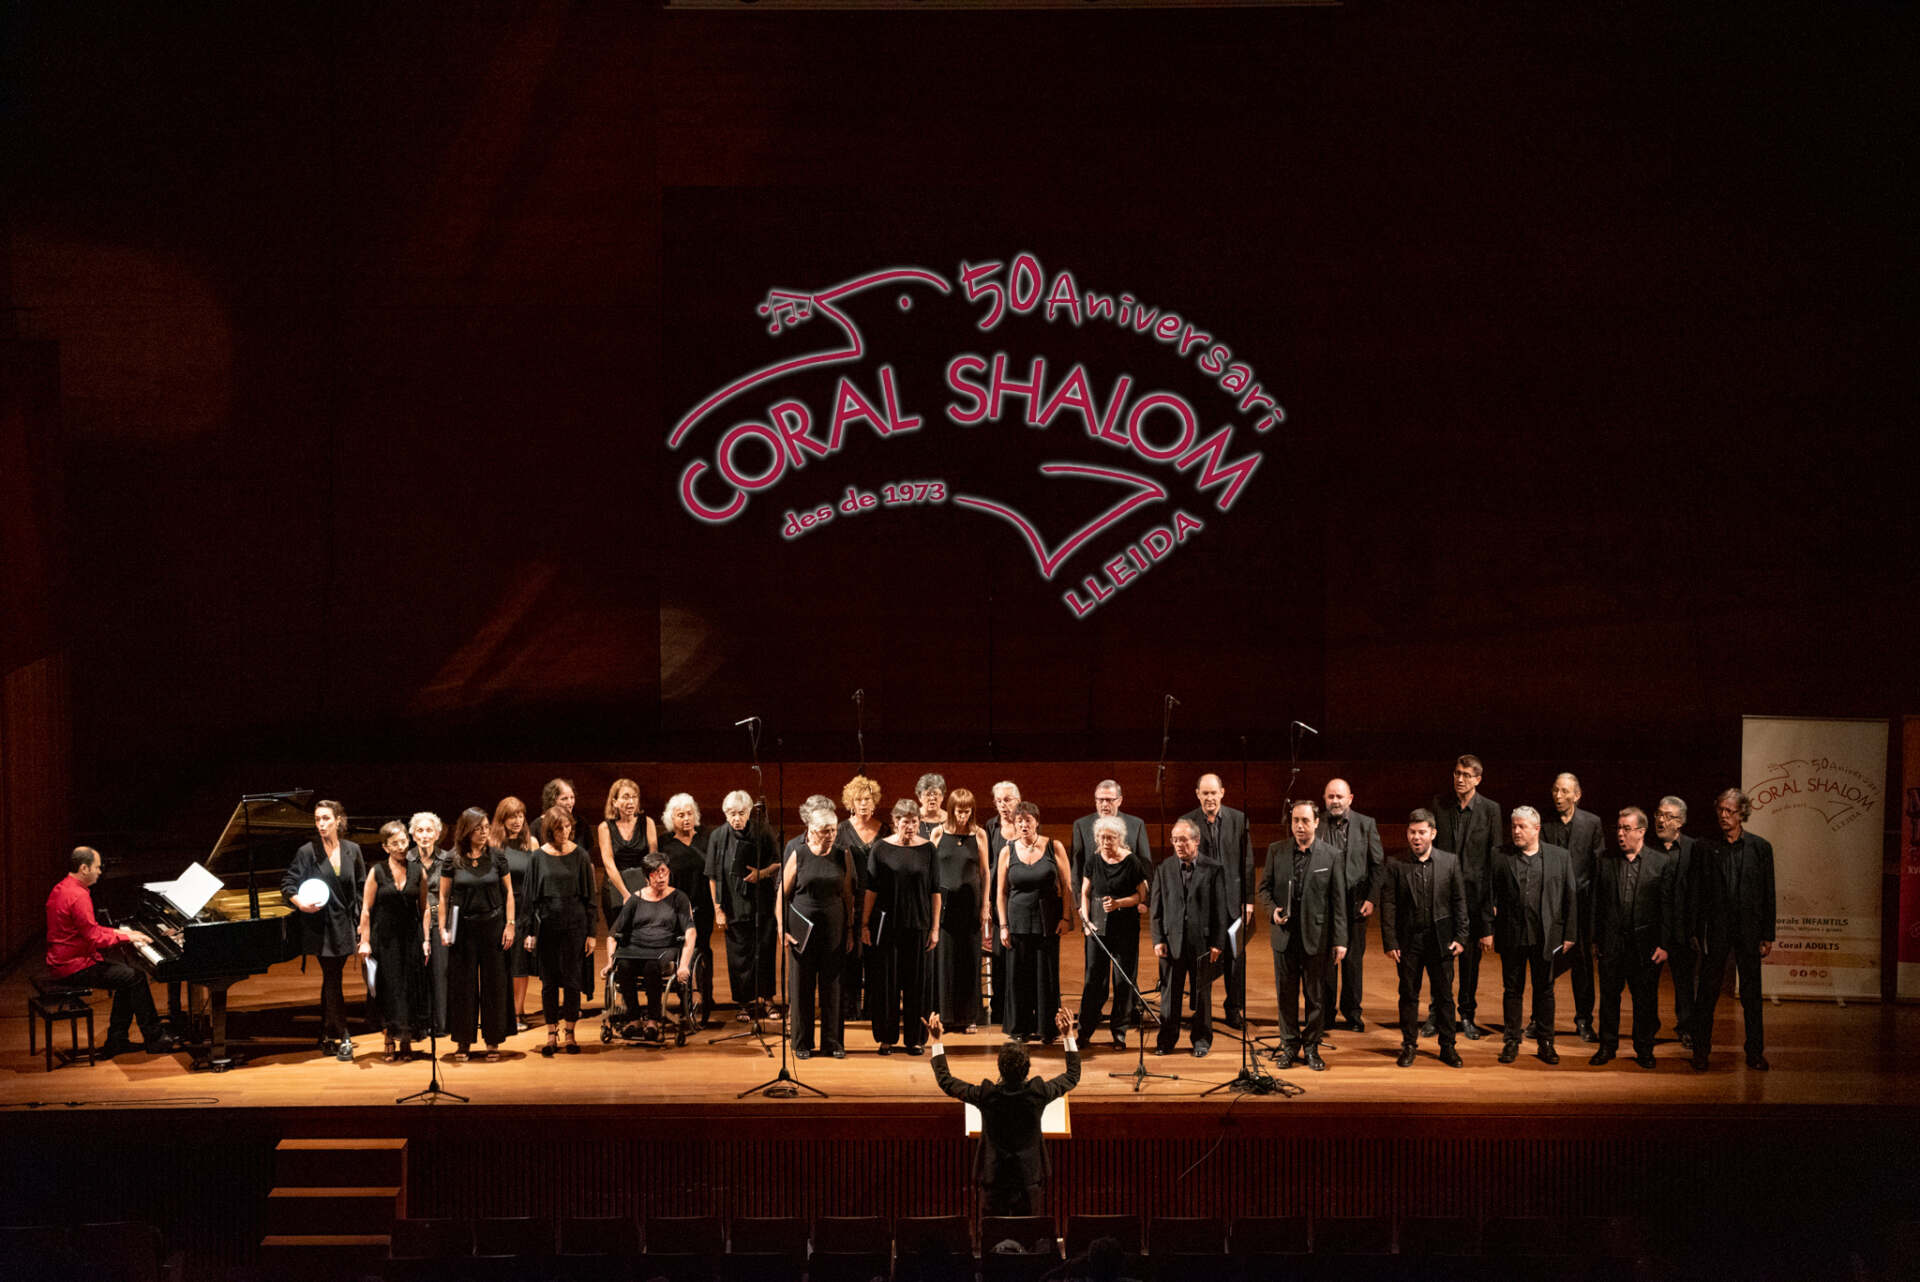 La Coral Shalom finalitza el seu 50è aniversari a l’Auditori Enric Granados